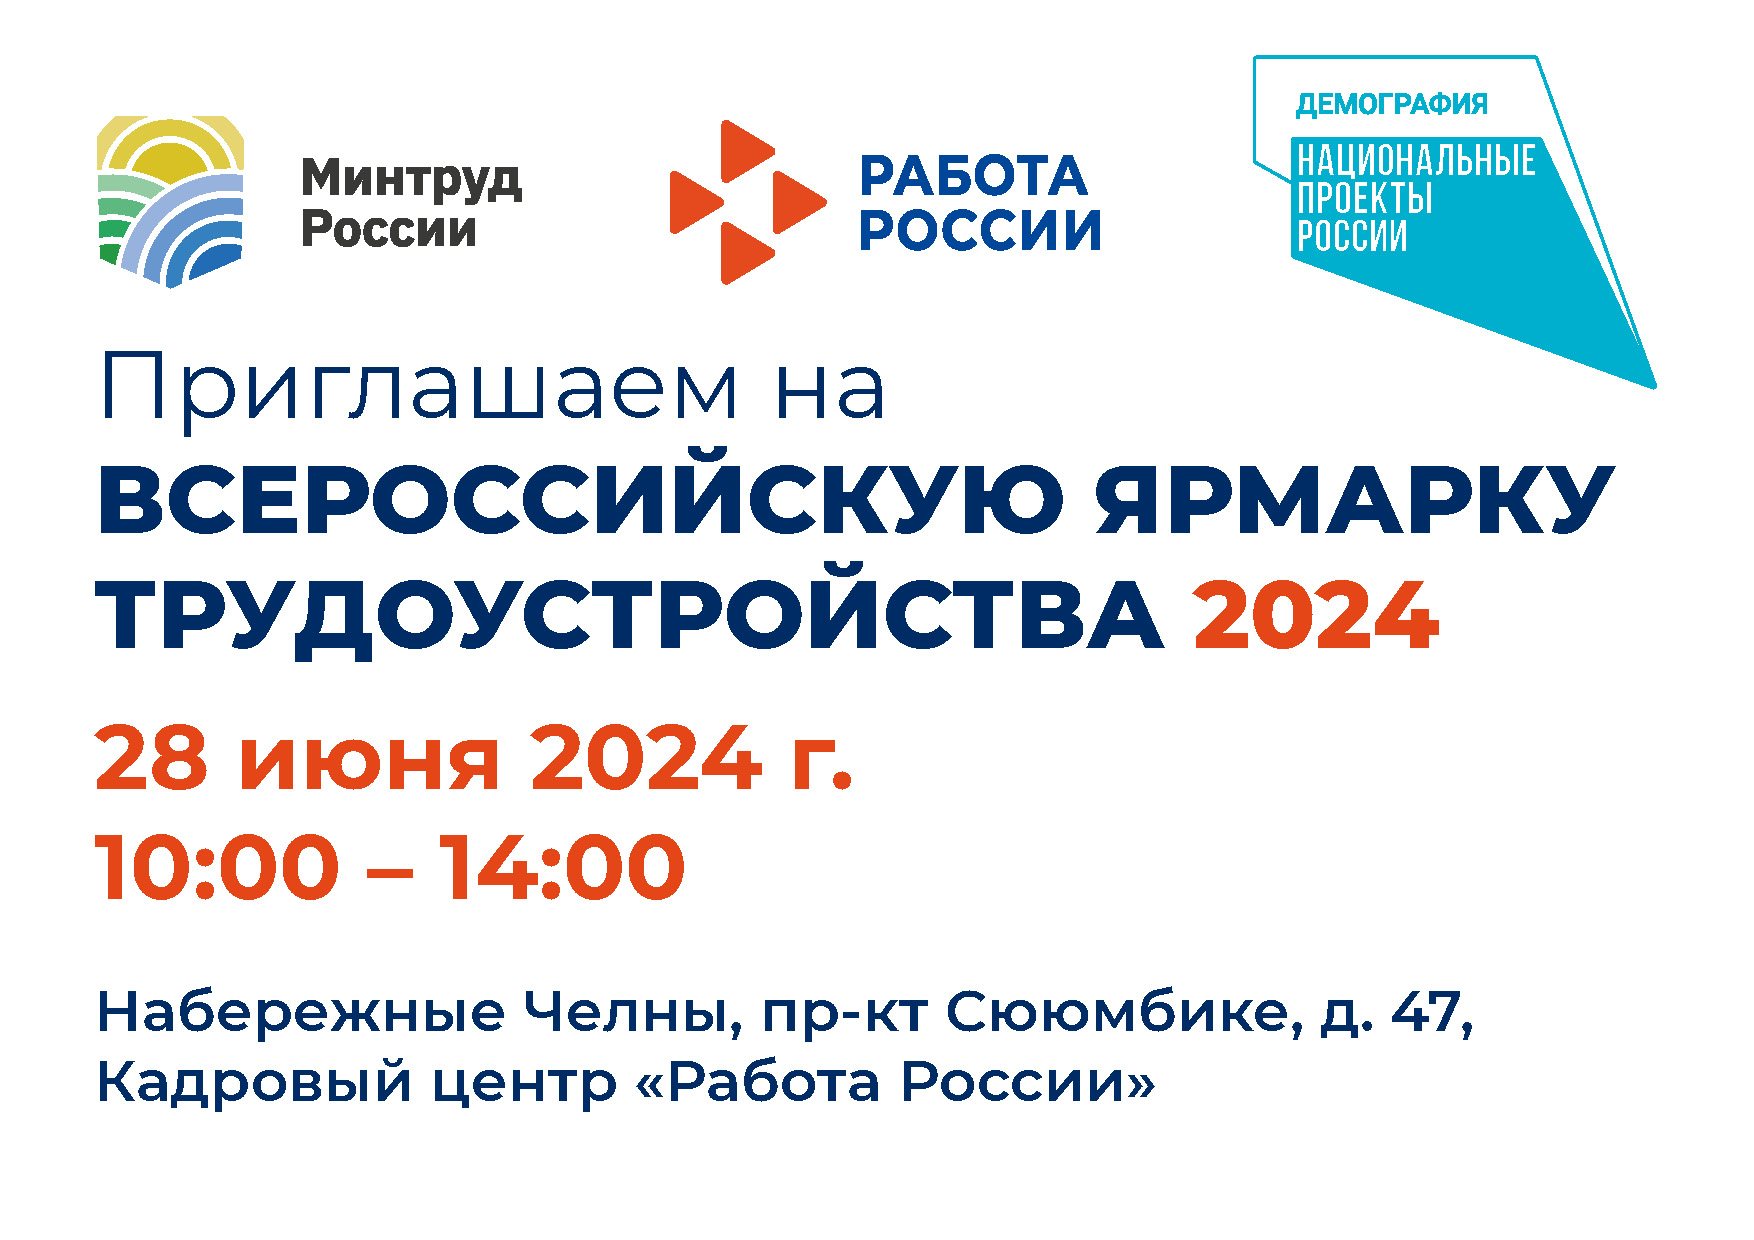 Всеросийская ярмарка вакансий «Работа России. Время возможностей» 28 июня 2024 года